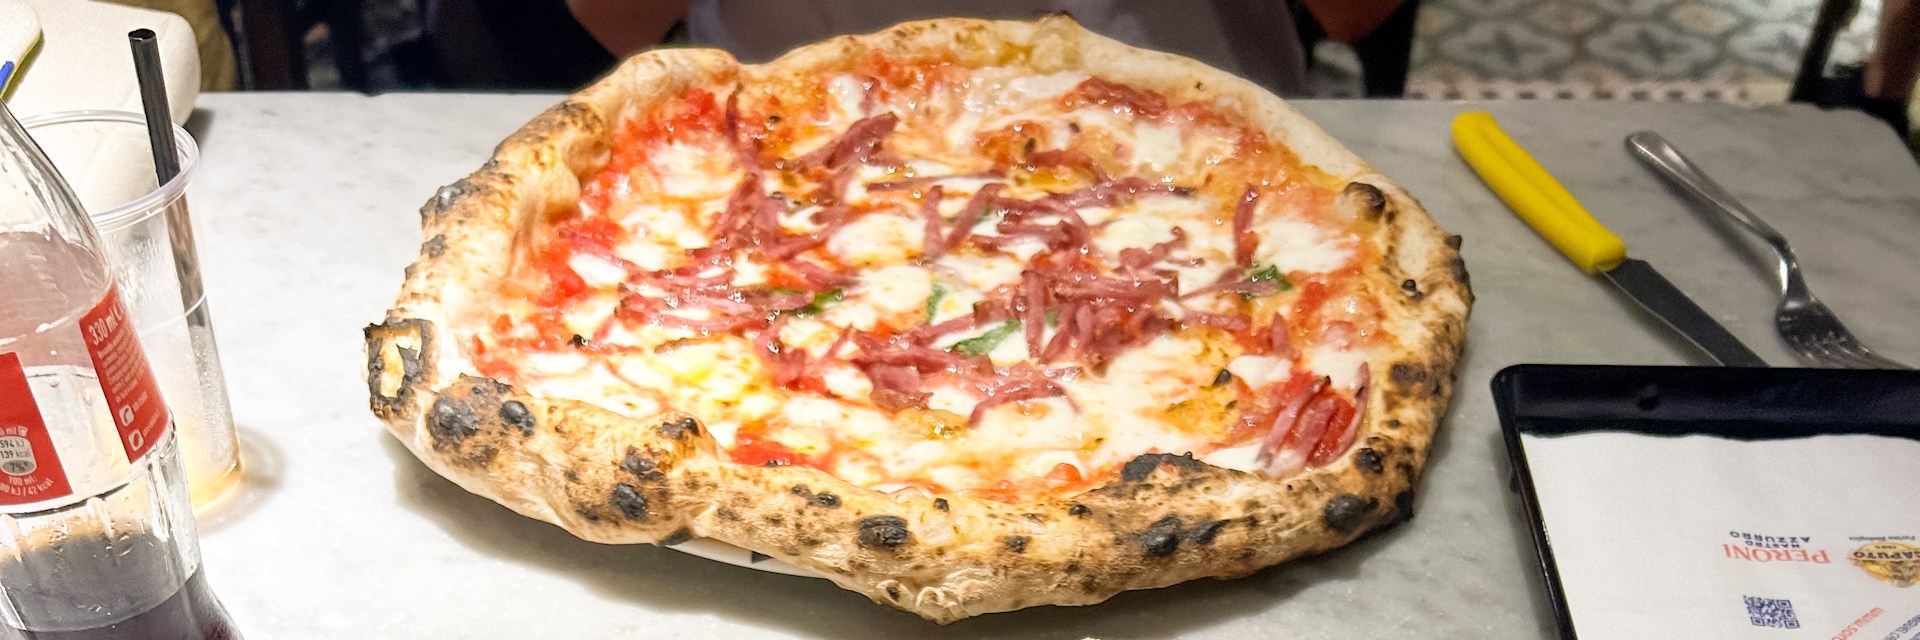 Pizzeria Gino Sorbillo in Naples